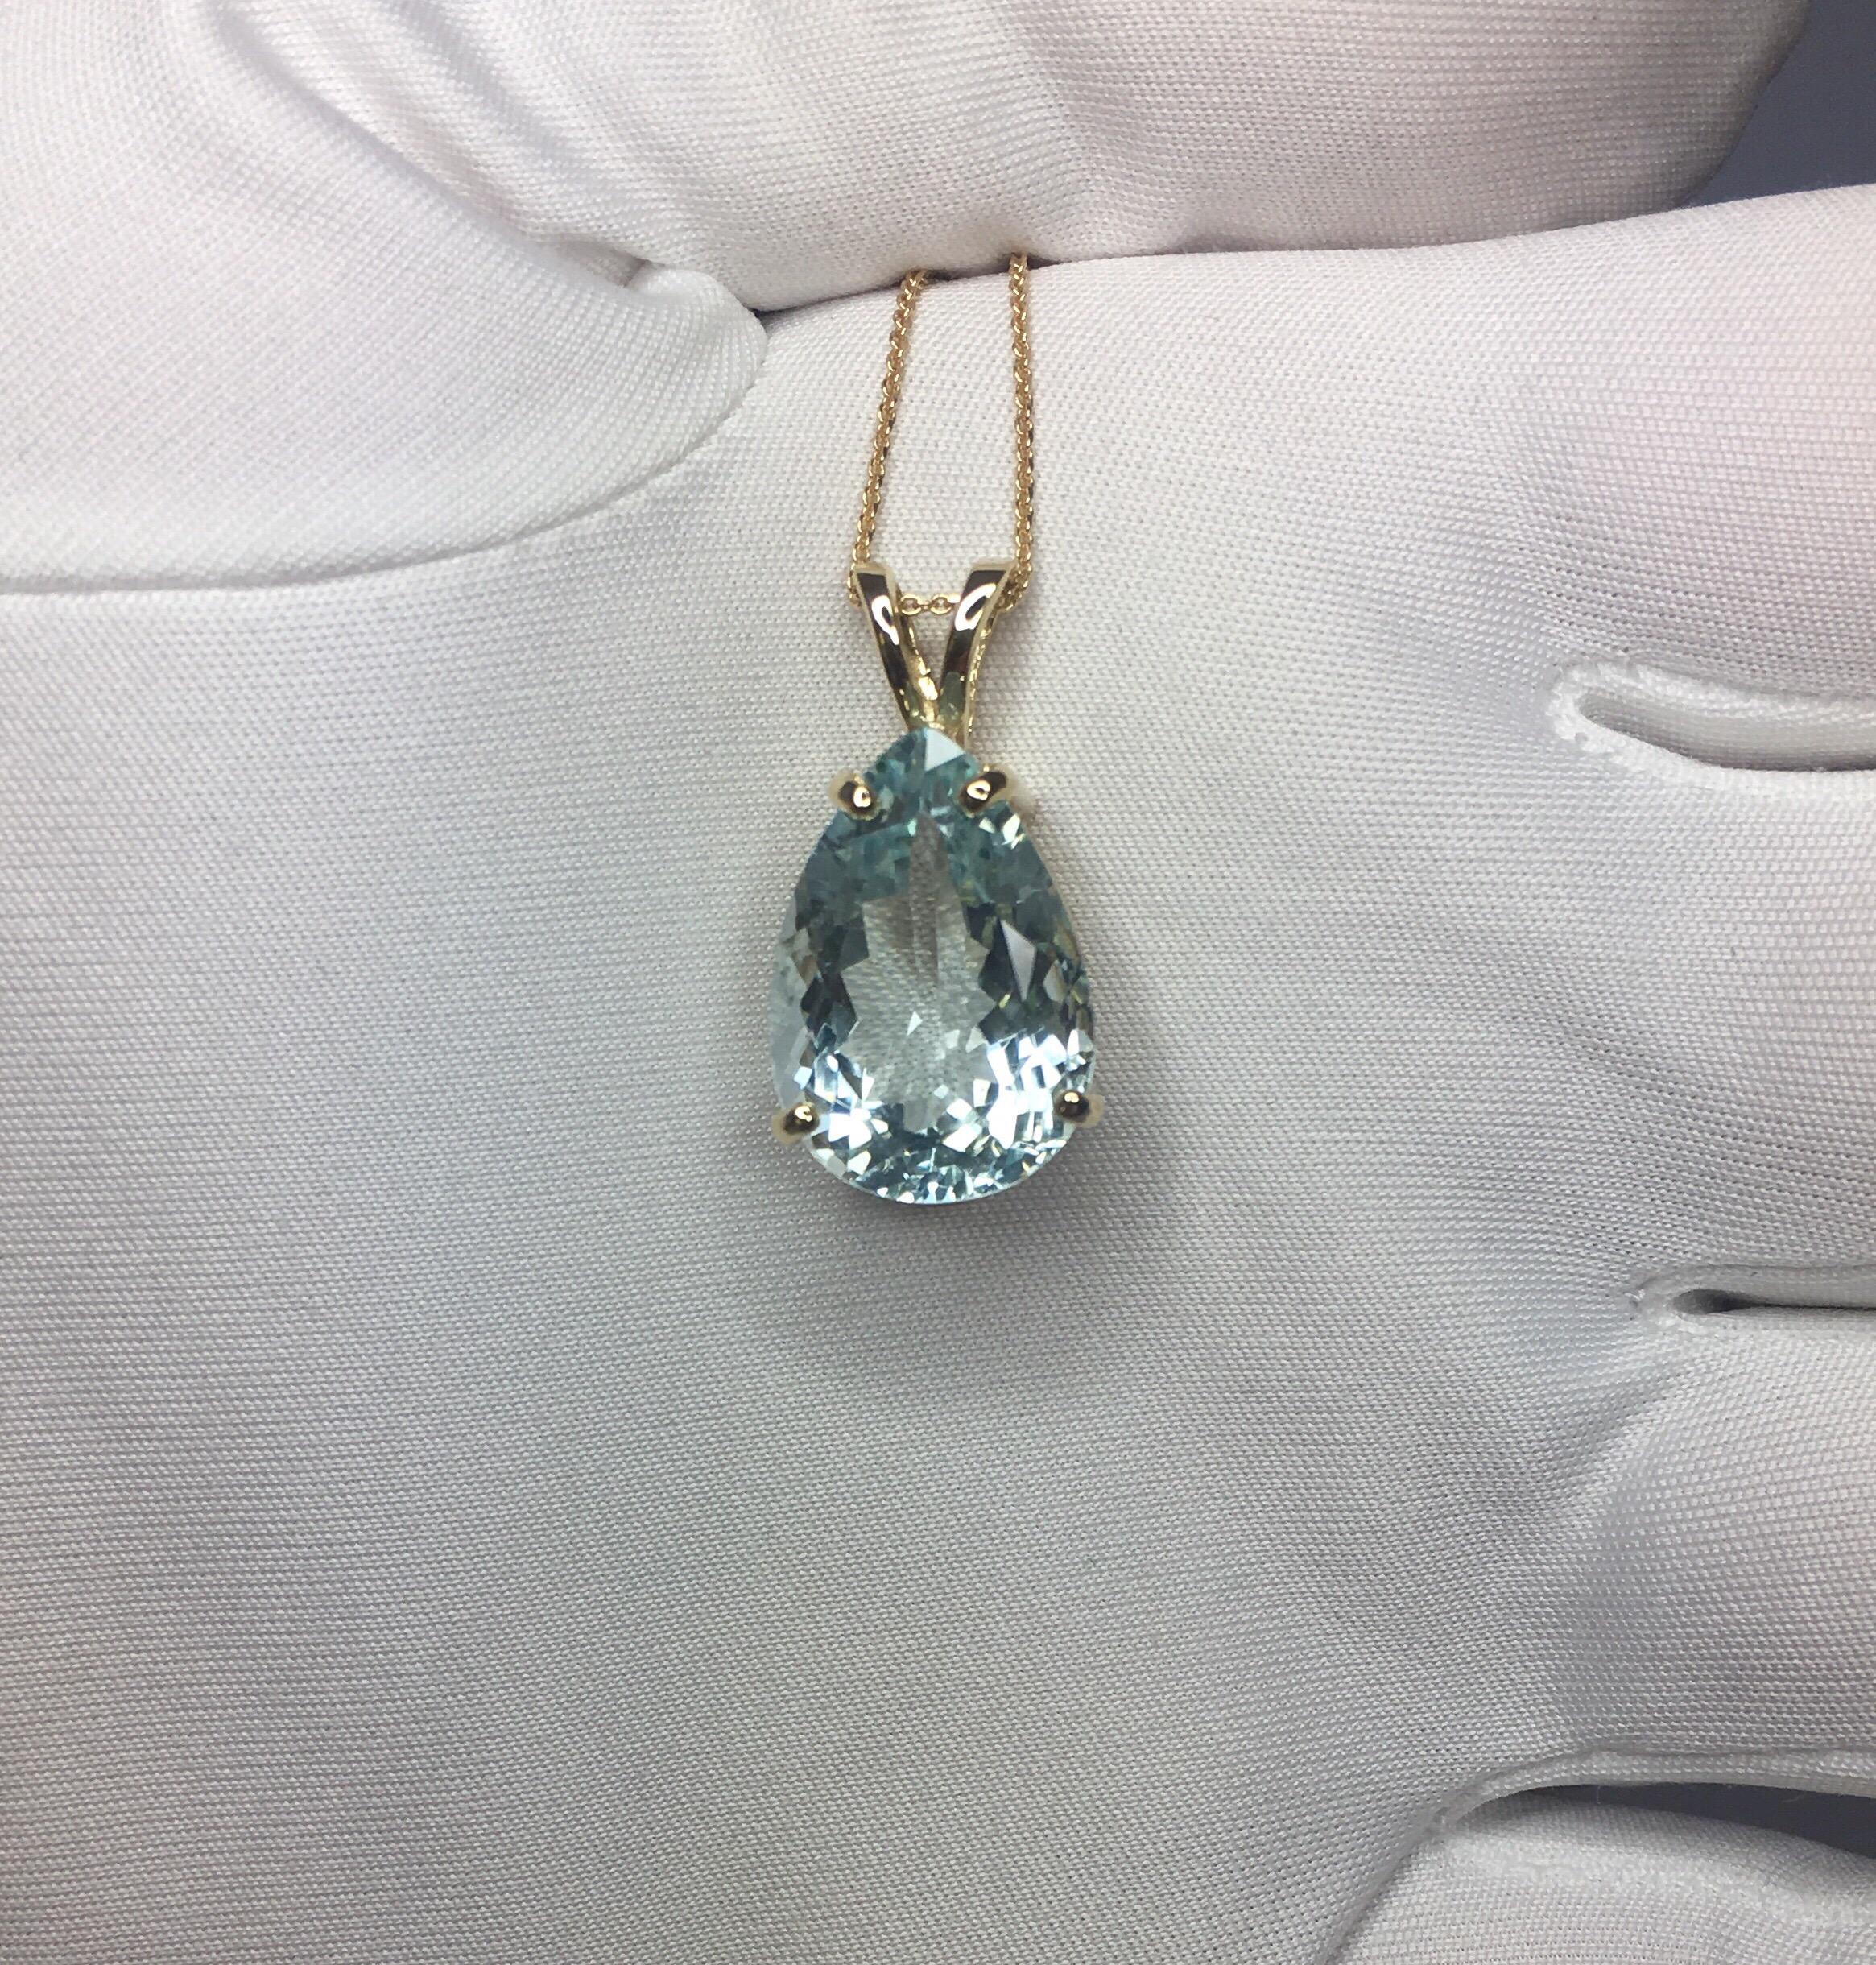 large aquamarine pendant